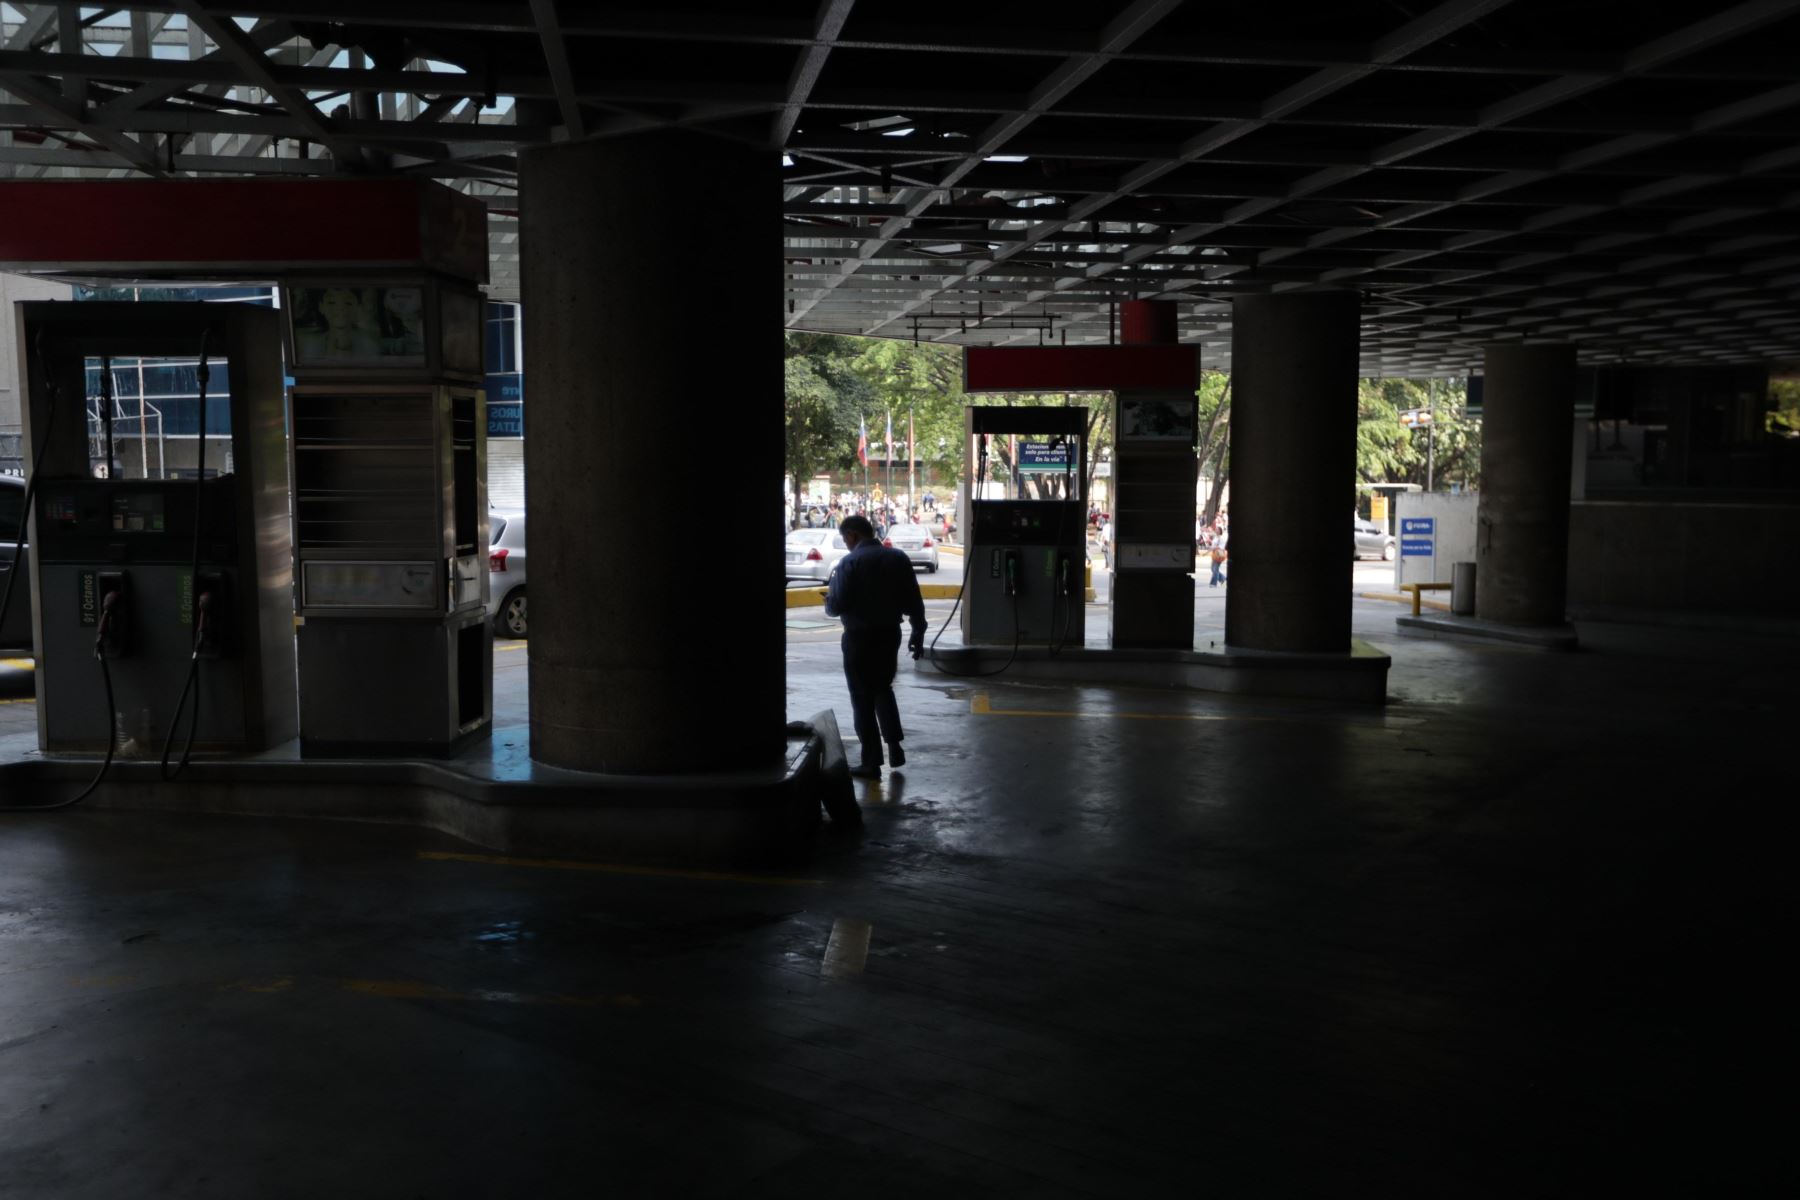 Vista de una estación de gasolina durante un apagón que afecta a población de Caracas en Venezuela.Foto:EFE